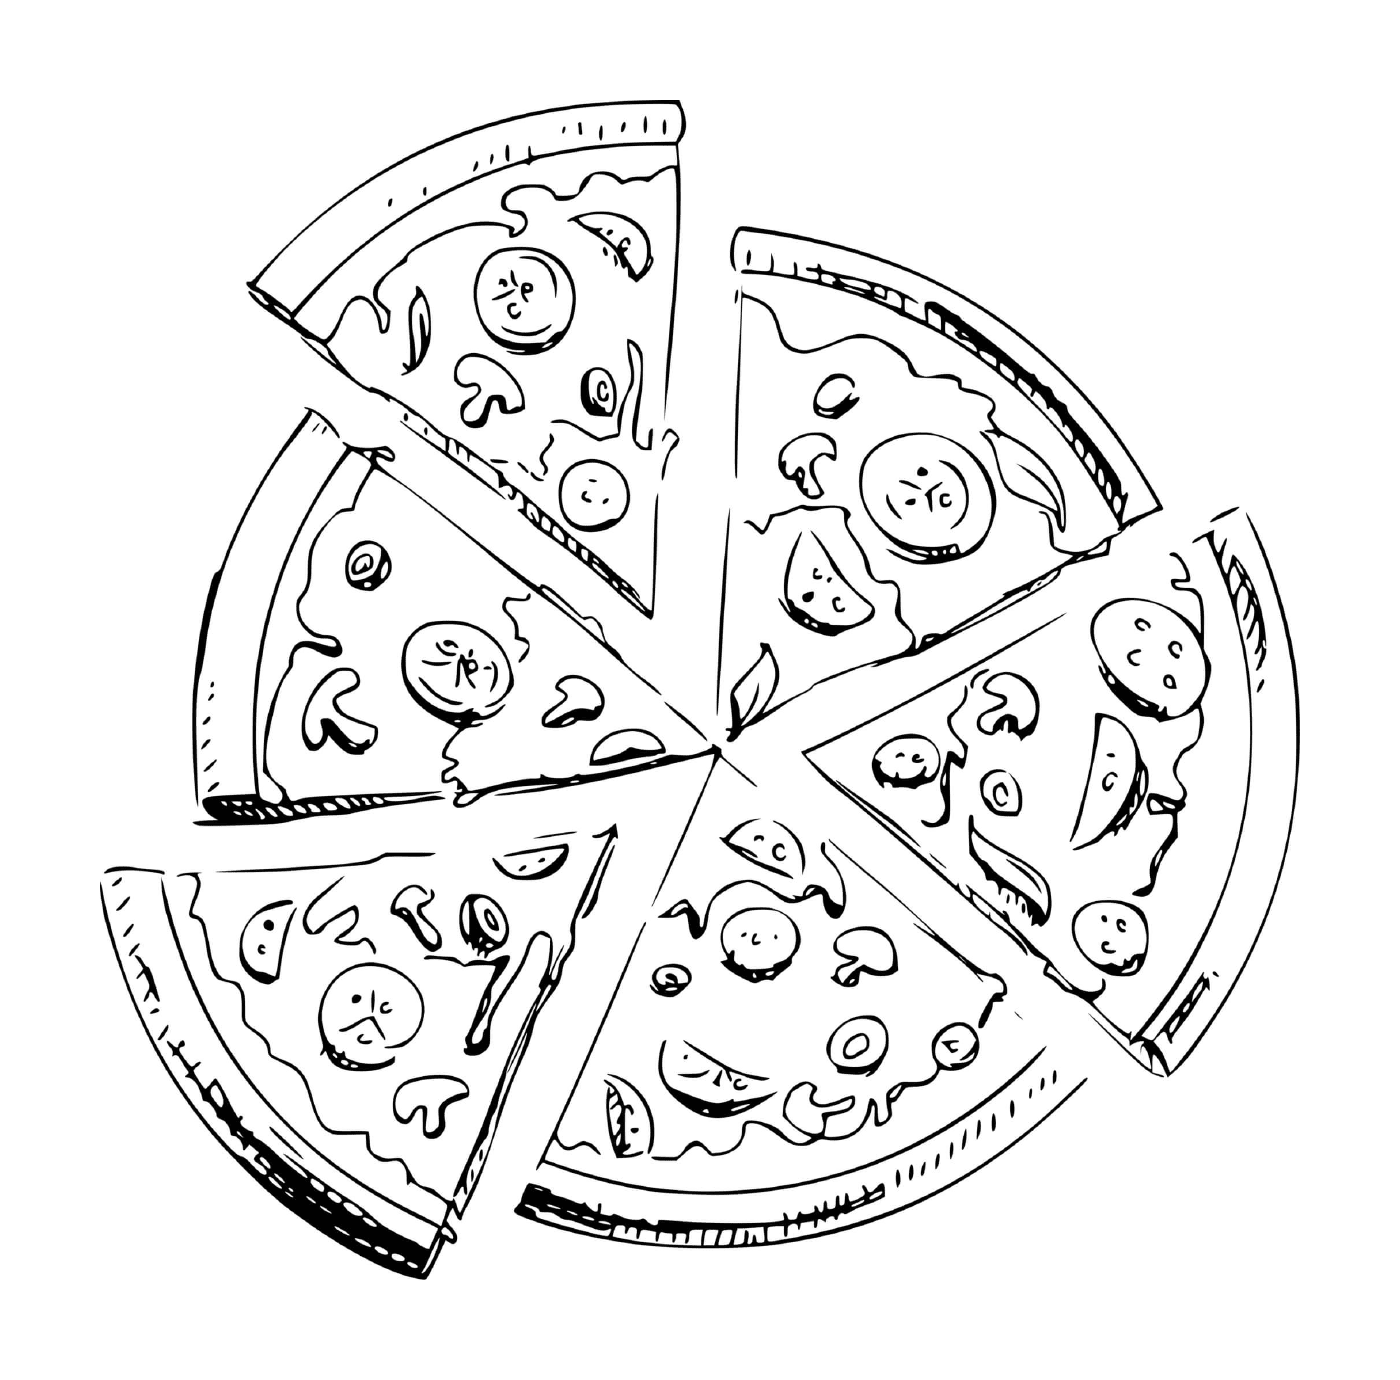  Seis pedaços de pizza 